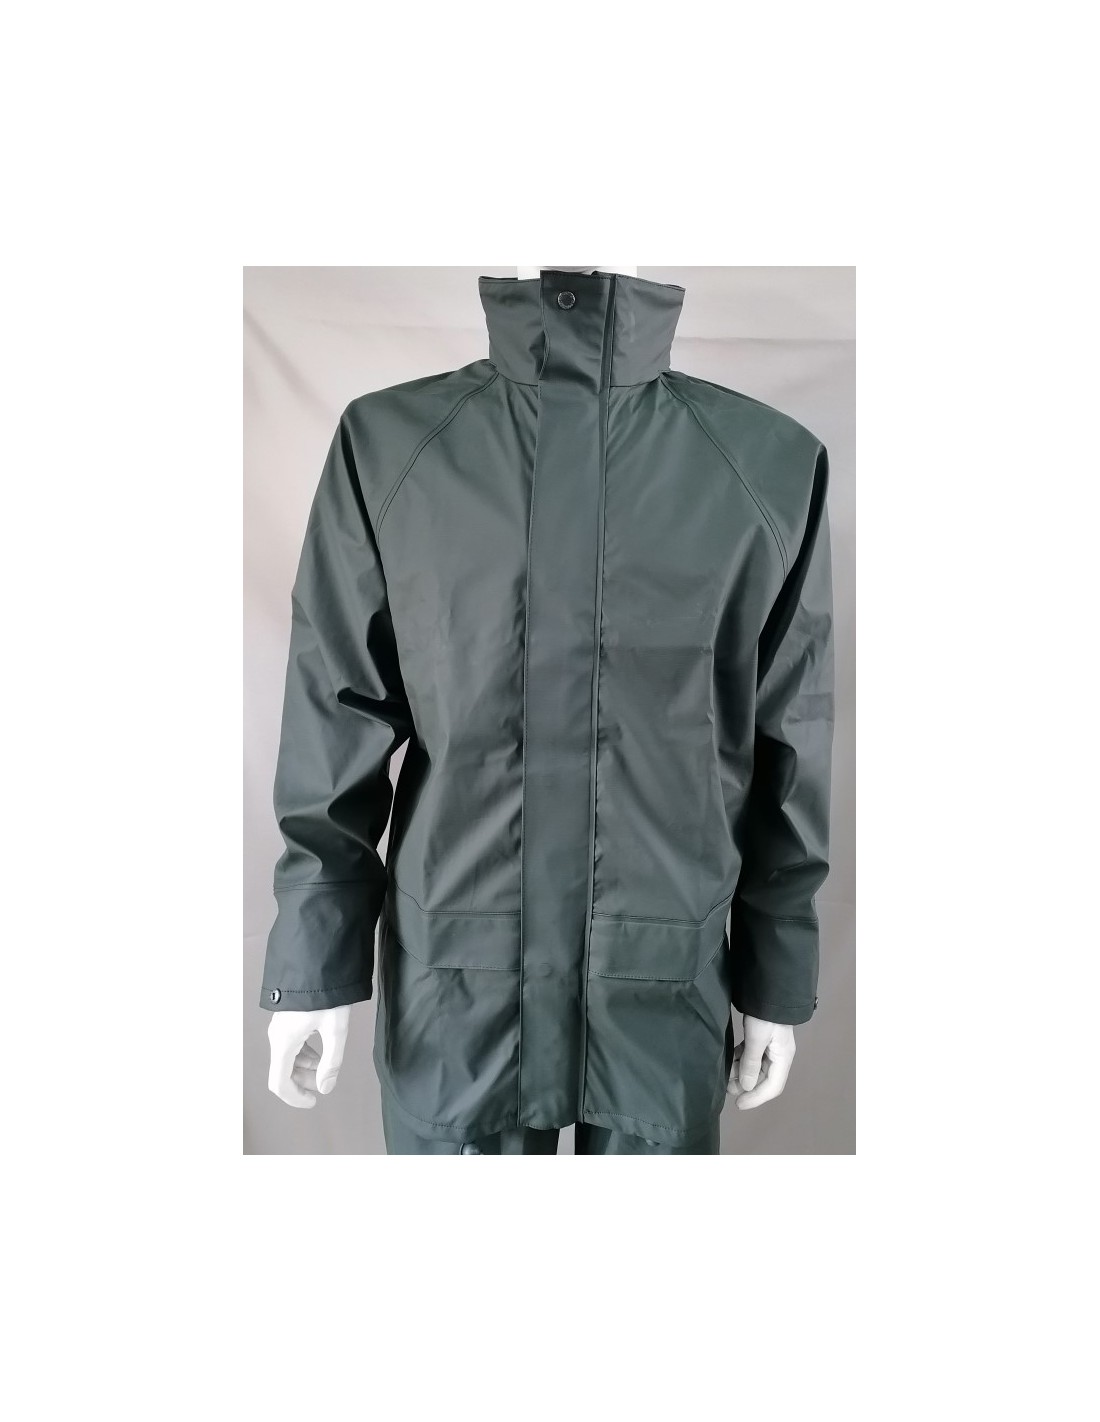 Flexible waterproof windproof rain jacket